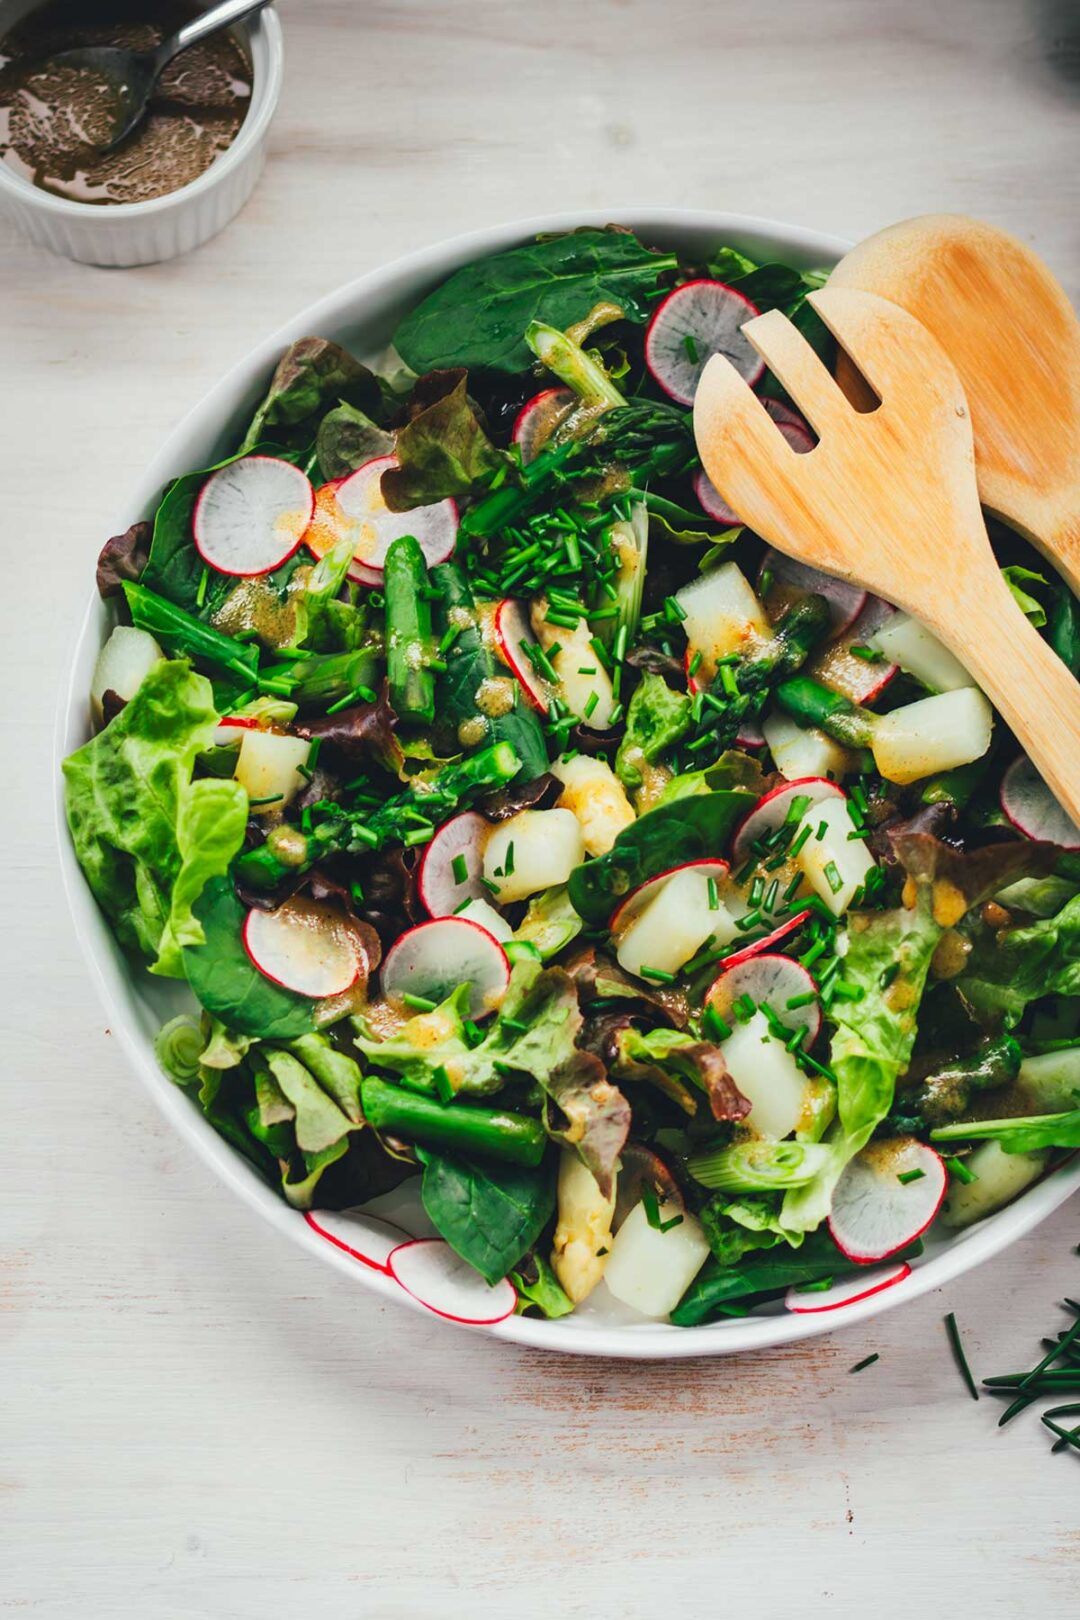 Rezept für frischen, grünen Frühlingssalat aus Blattsalaten, Babyspinat, grünem Spargel, weißem Spargel, knackigen Radieschen und einem leckeren Honig-Senf-Dressing als Salatsauce. Ein regionaler und saisonaler Salat, der blitzschnell zubereitet ist! | moeyskitchen.com